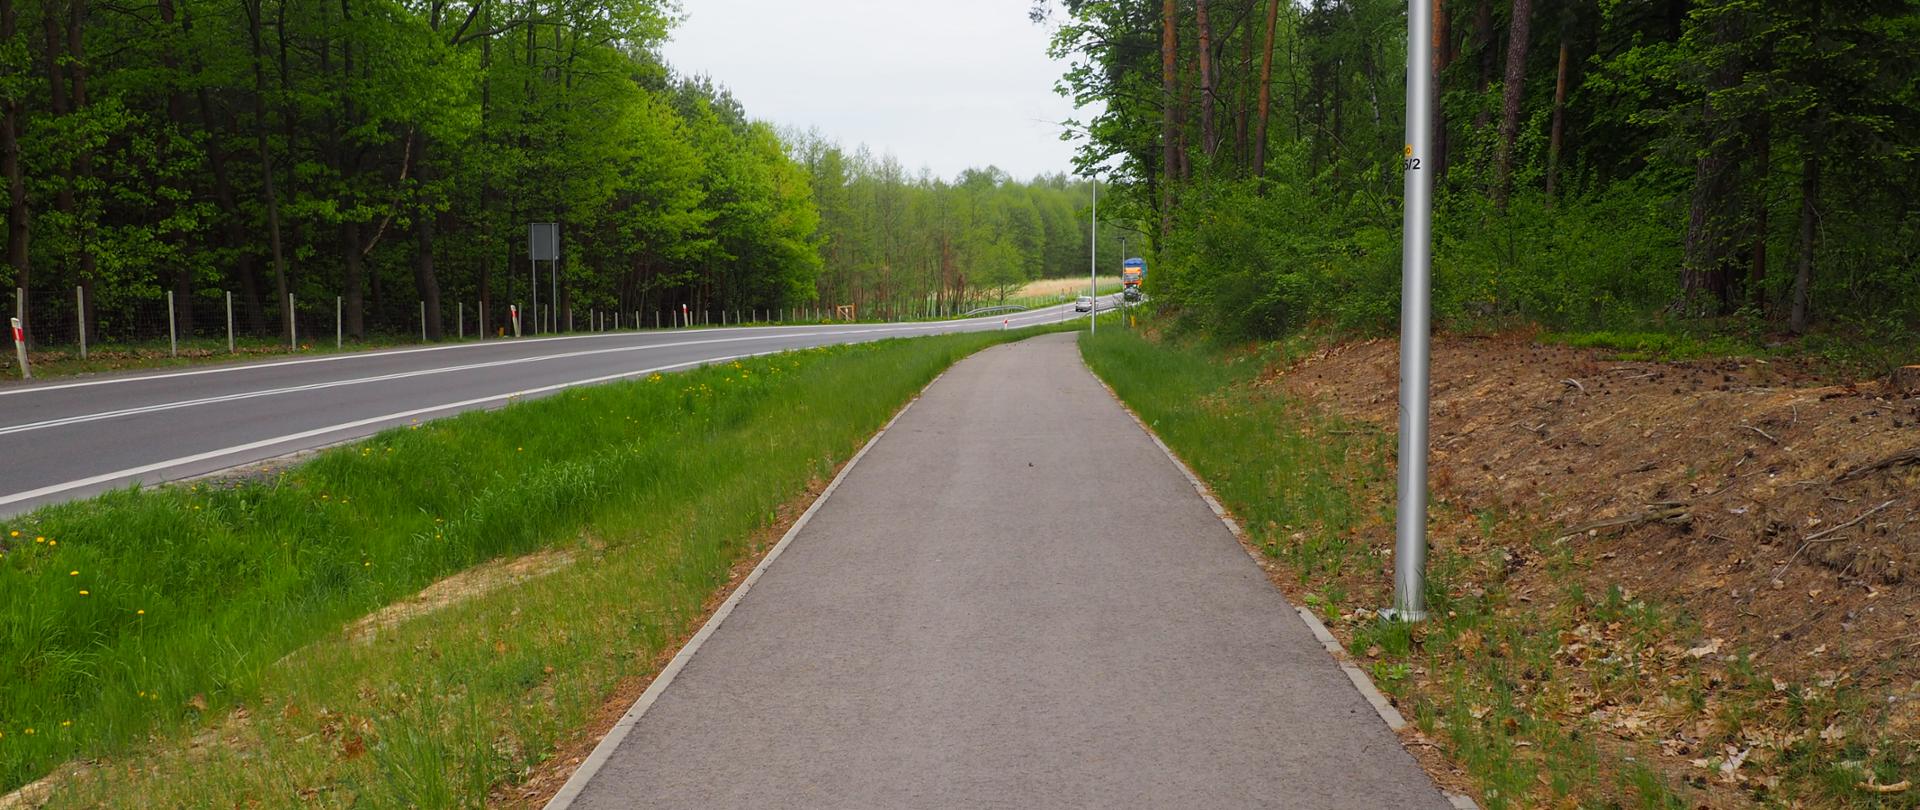 Widać ścieżkę pieszo-rowerową, po lewej stronie droga, zielone pobocza, w tle samochody